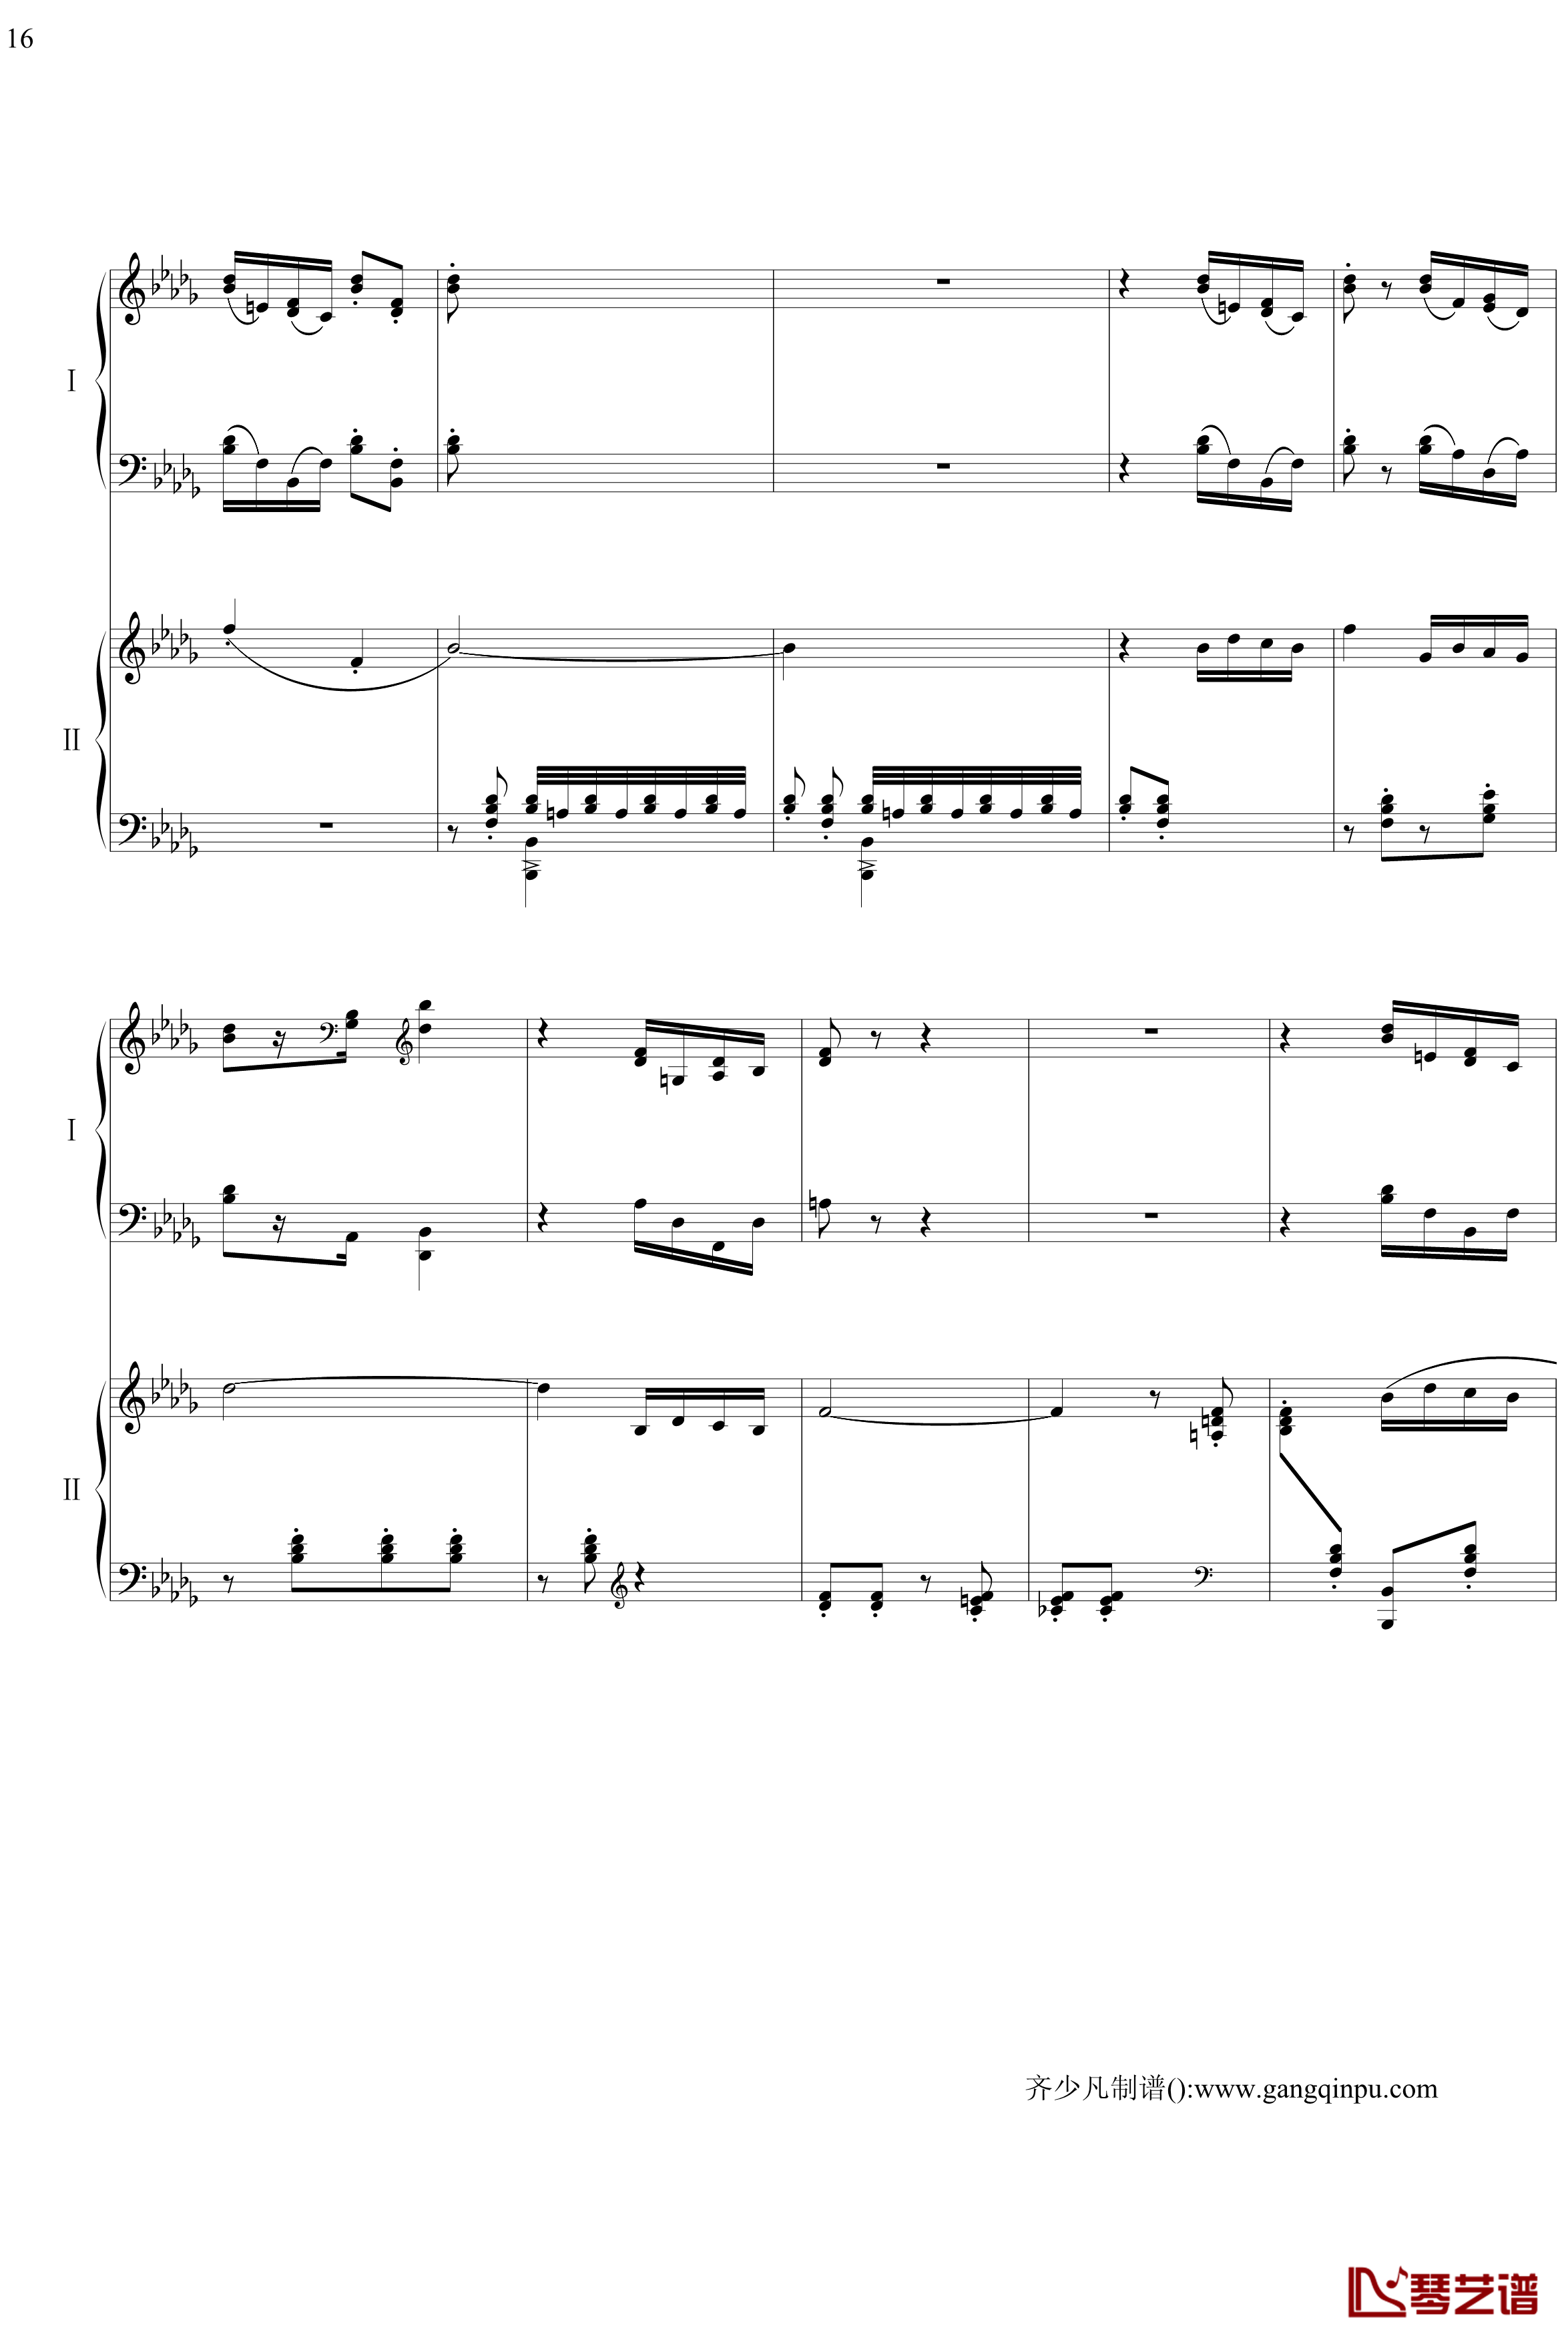 帕格尼尼主题狂想曲钢琴谱-11~18变奏-拉赫马尼若夫16